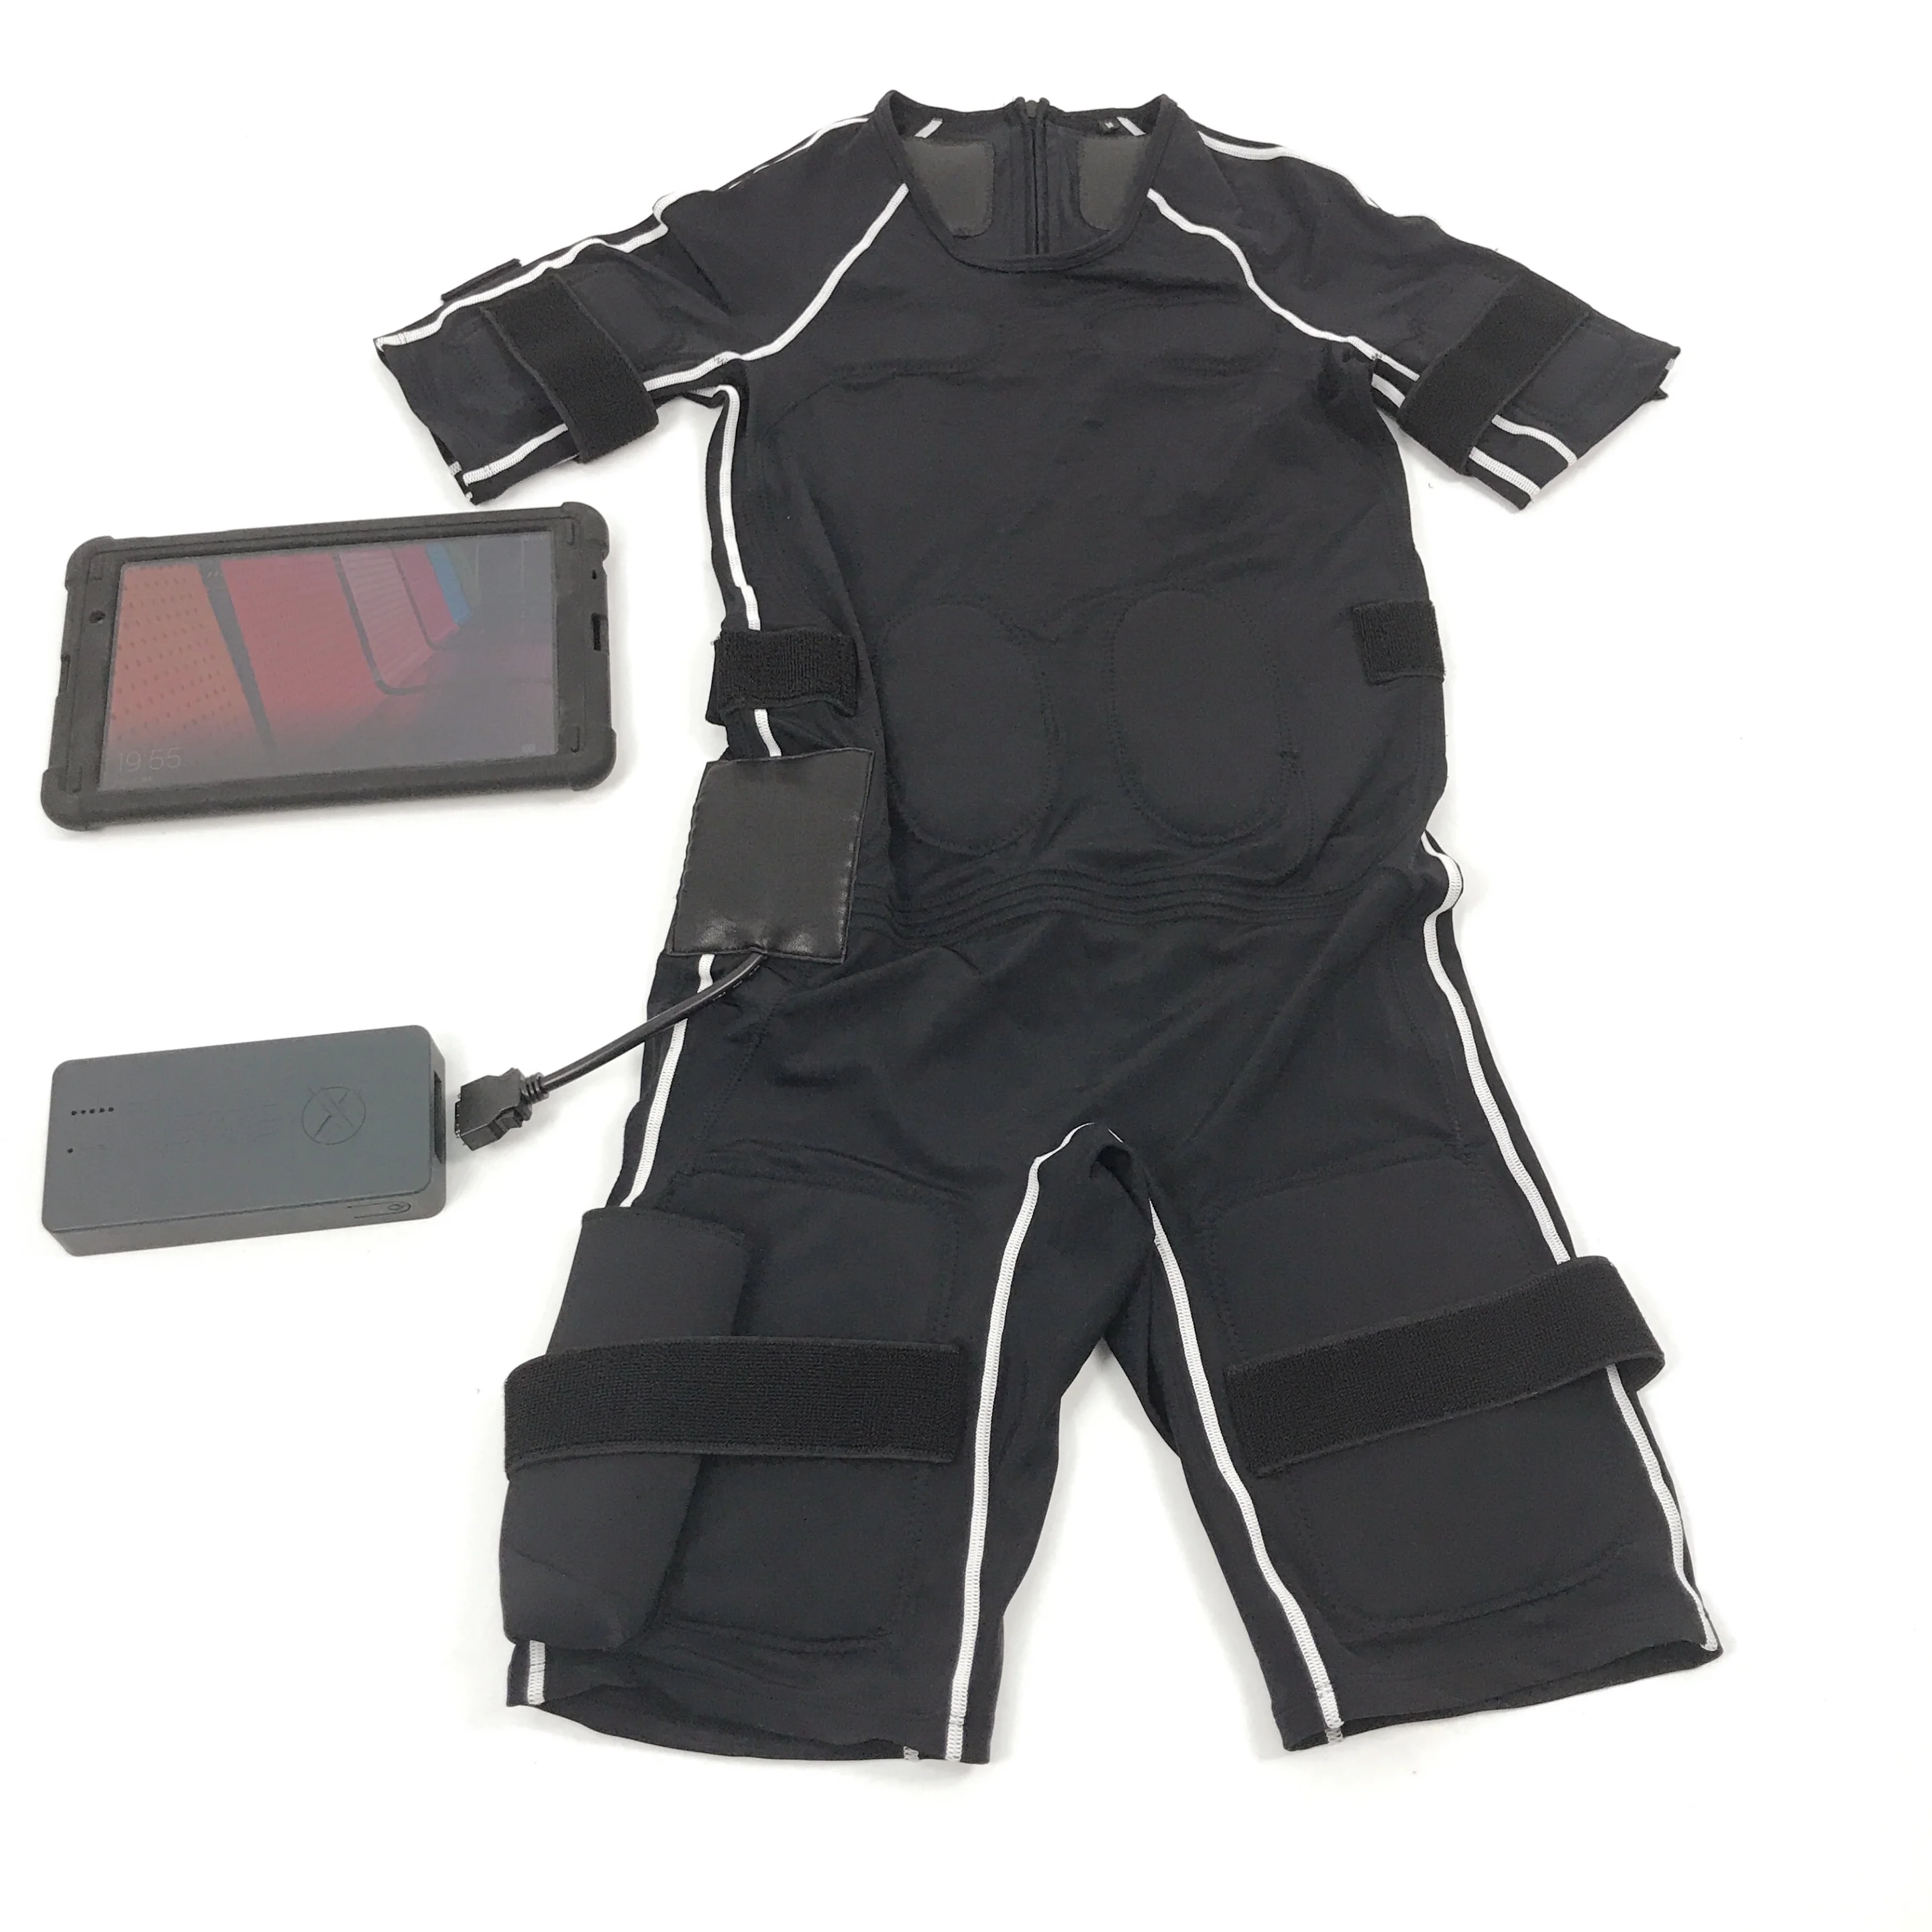 Сухой костюм Ems Для домашнего использования в тренажерном зале Тренировочный сухой костюм Ems с электромышечным тренажером для электростимуляции мышц Эстетика iTech